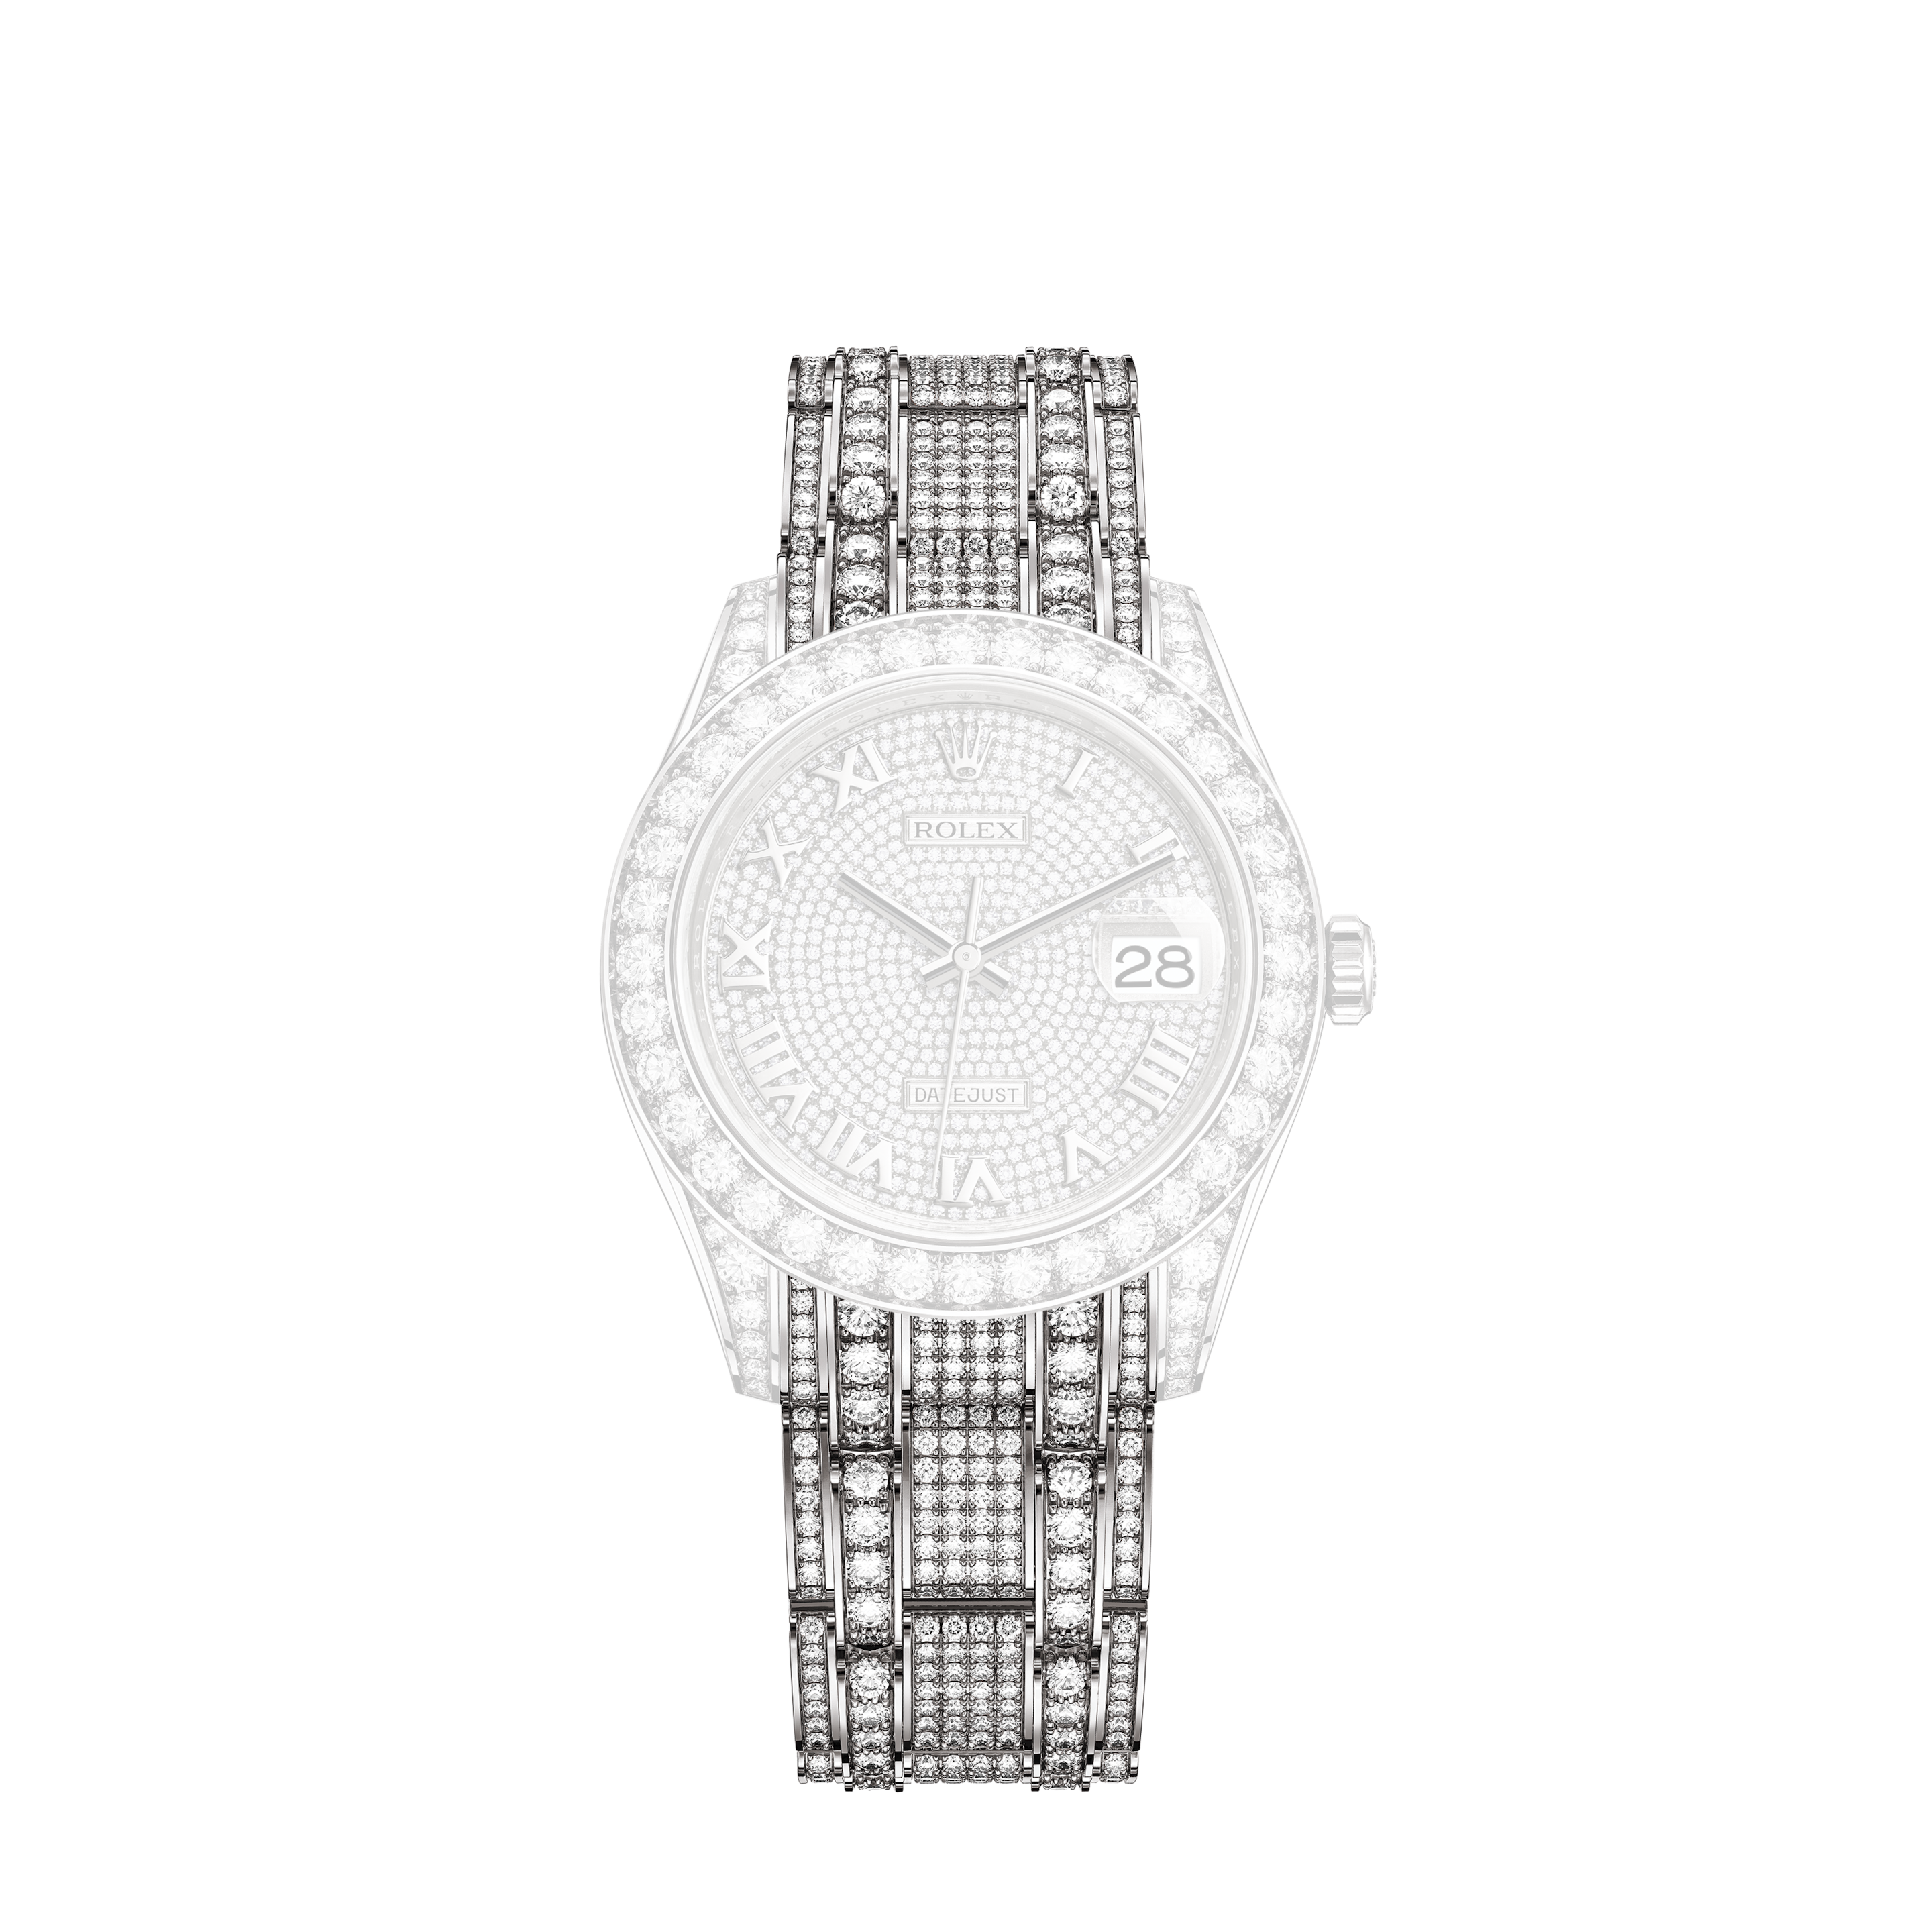 Rolex Pepsi GMT-Master Herren Chronometer von 1968, Service, Ref. 1675Rolex Lady-Datejust 26 Women's Watch 179174